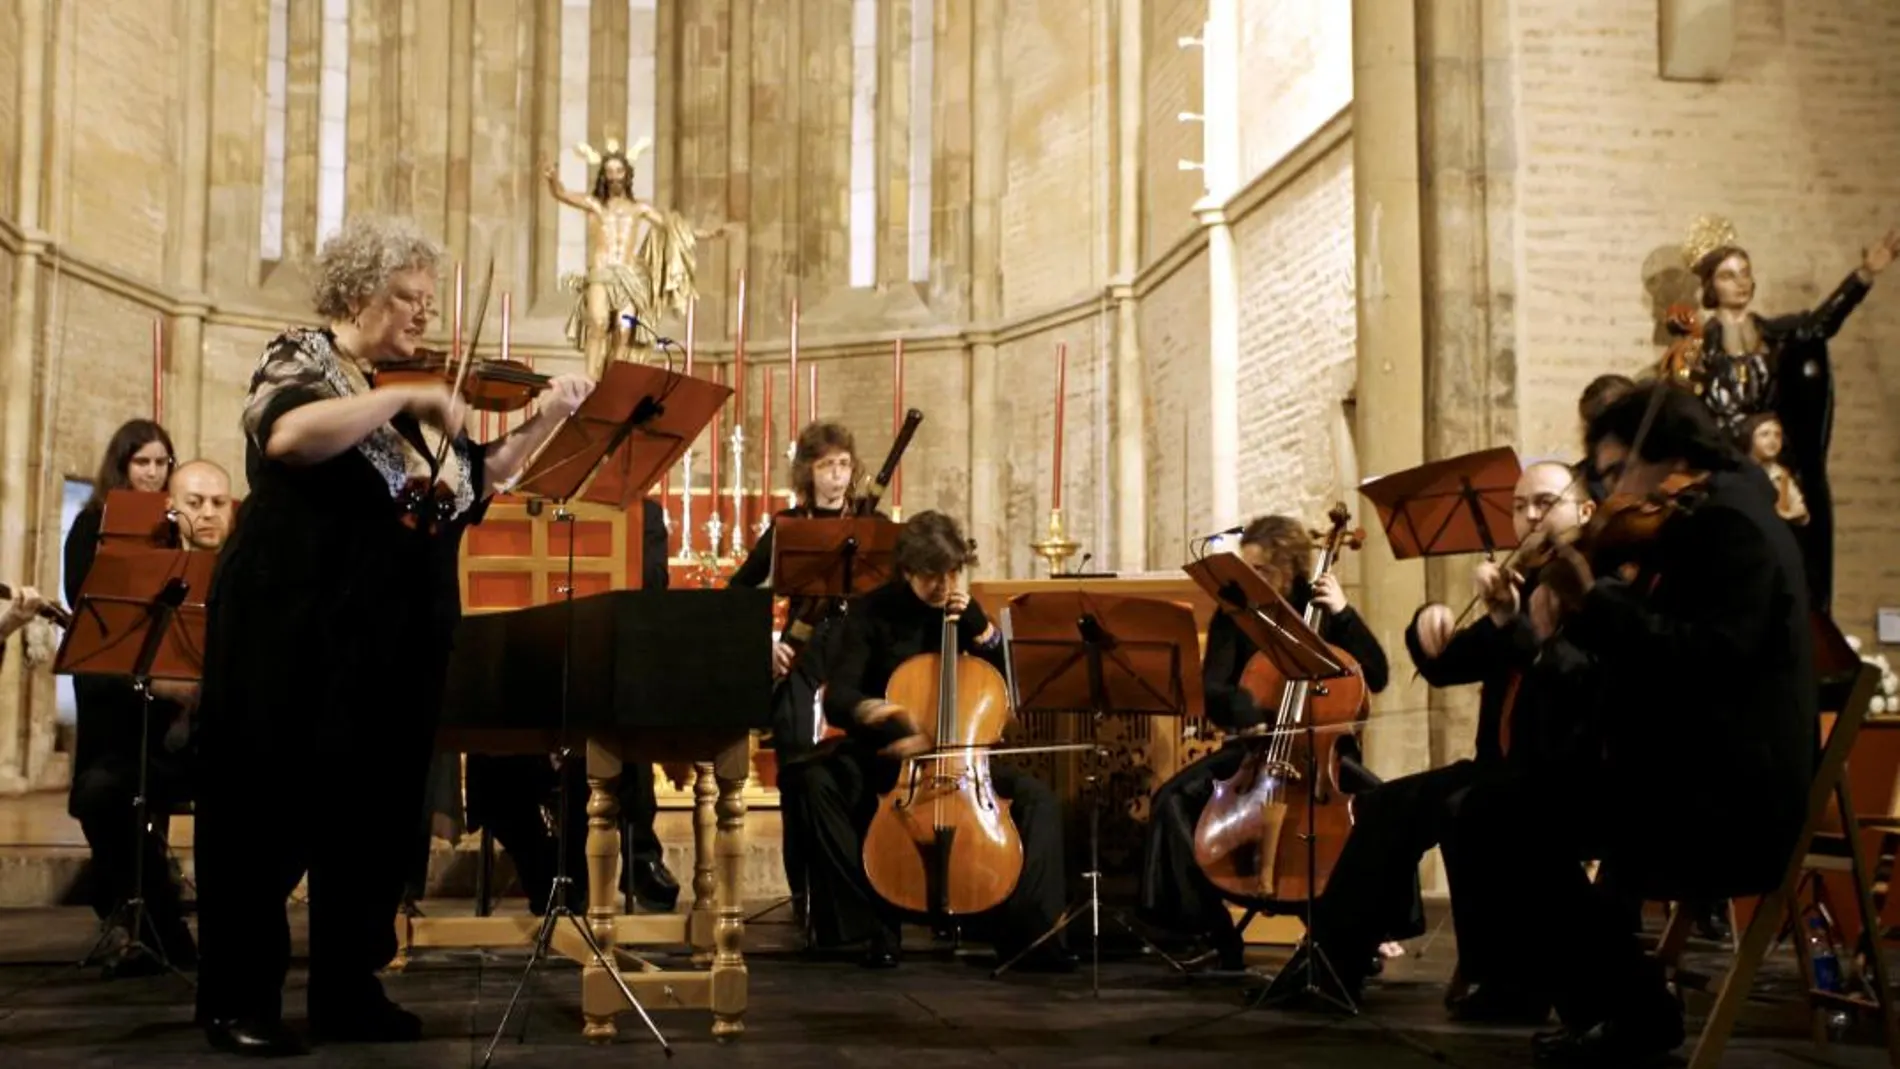 La Orquesta Barroca de Sevilla interpreta música antigua “con criterios historicistas”